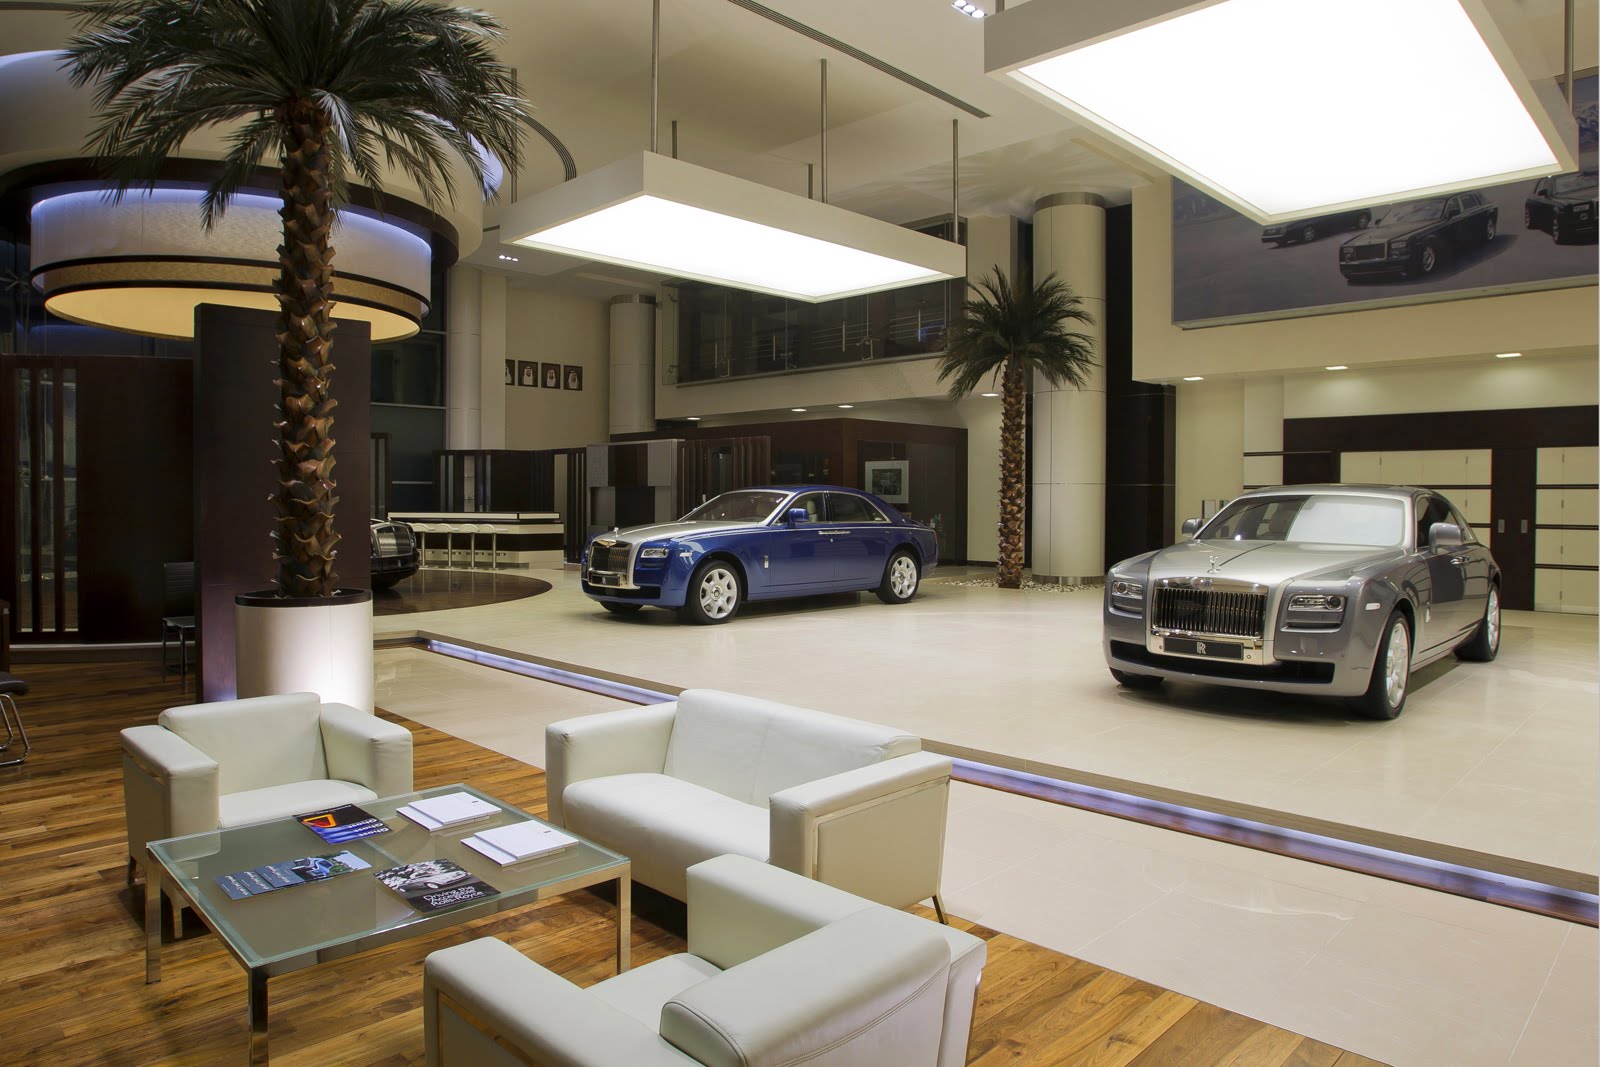 Rolls Royce dealership